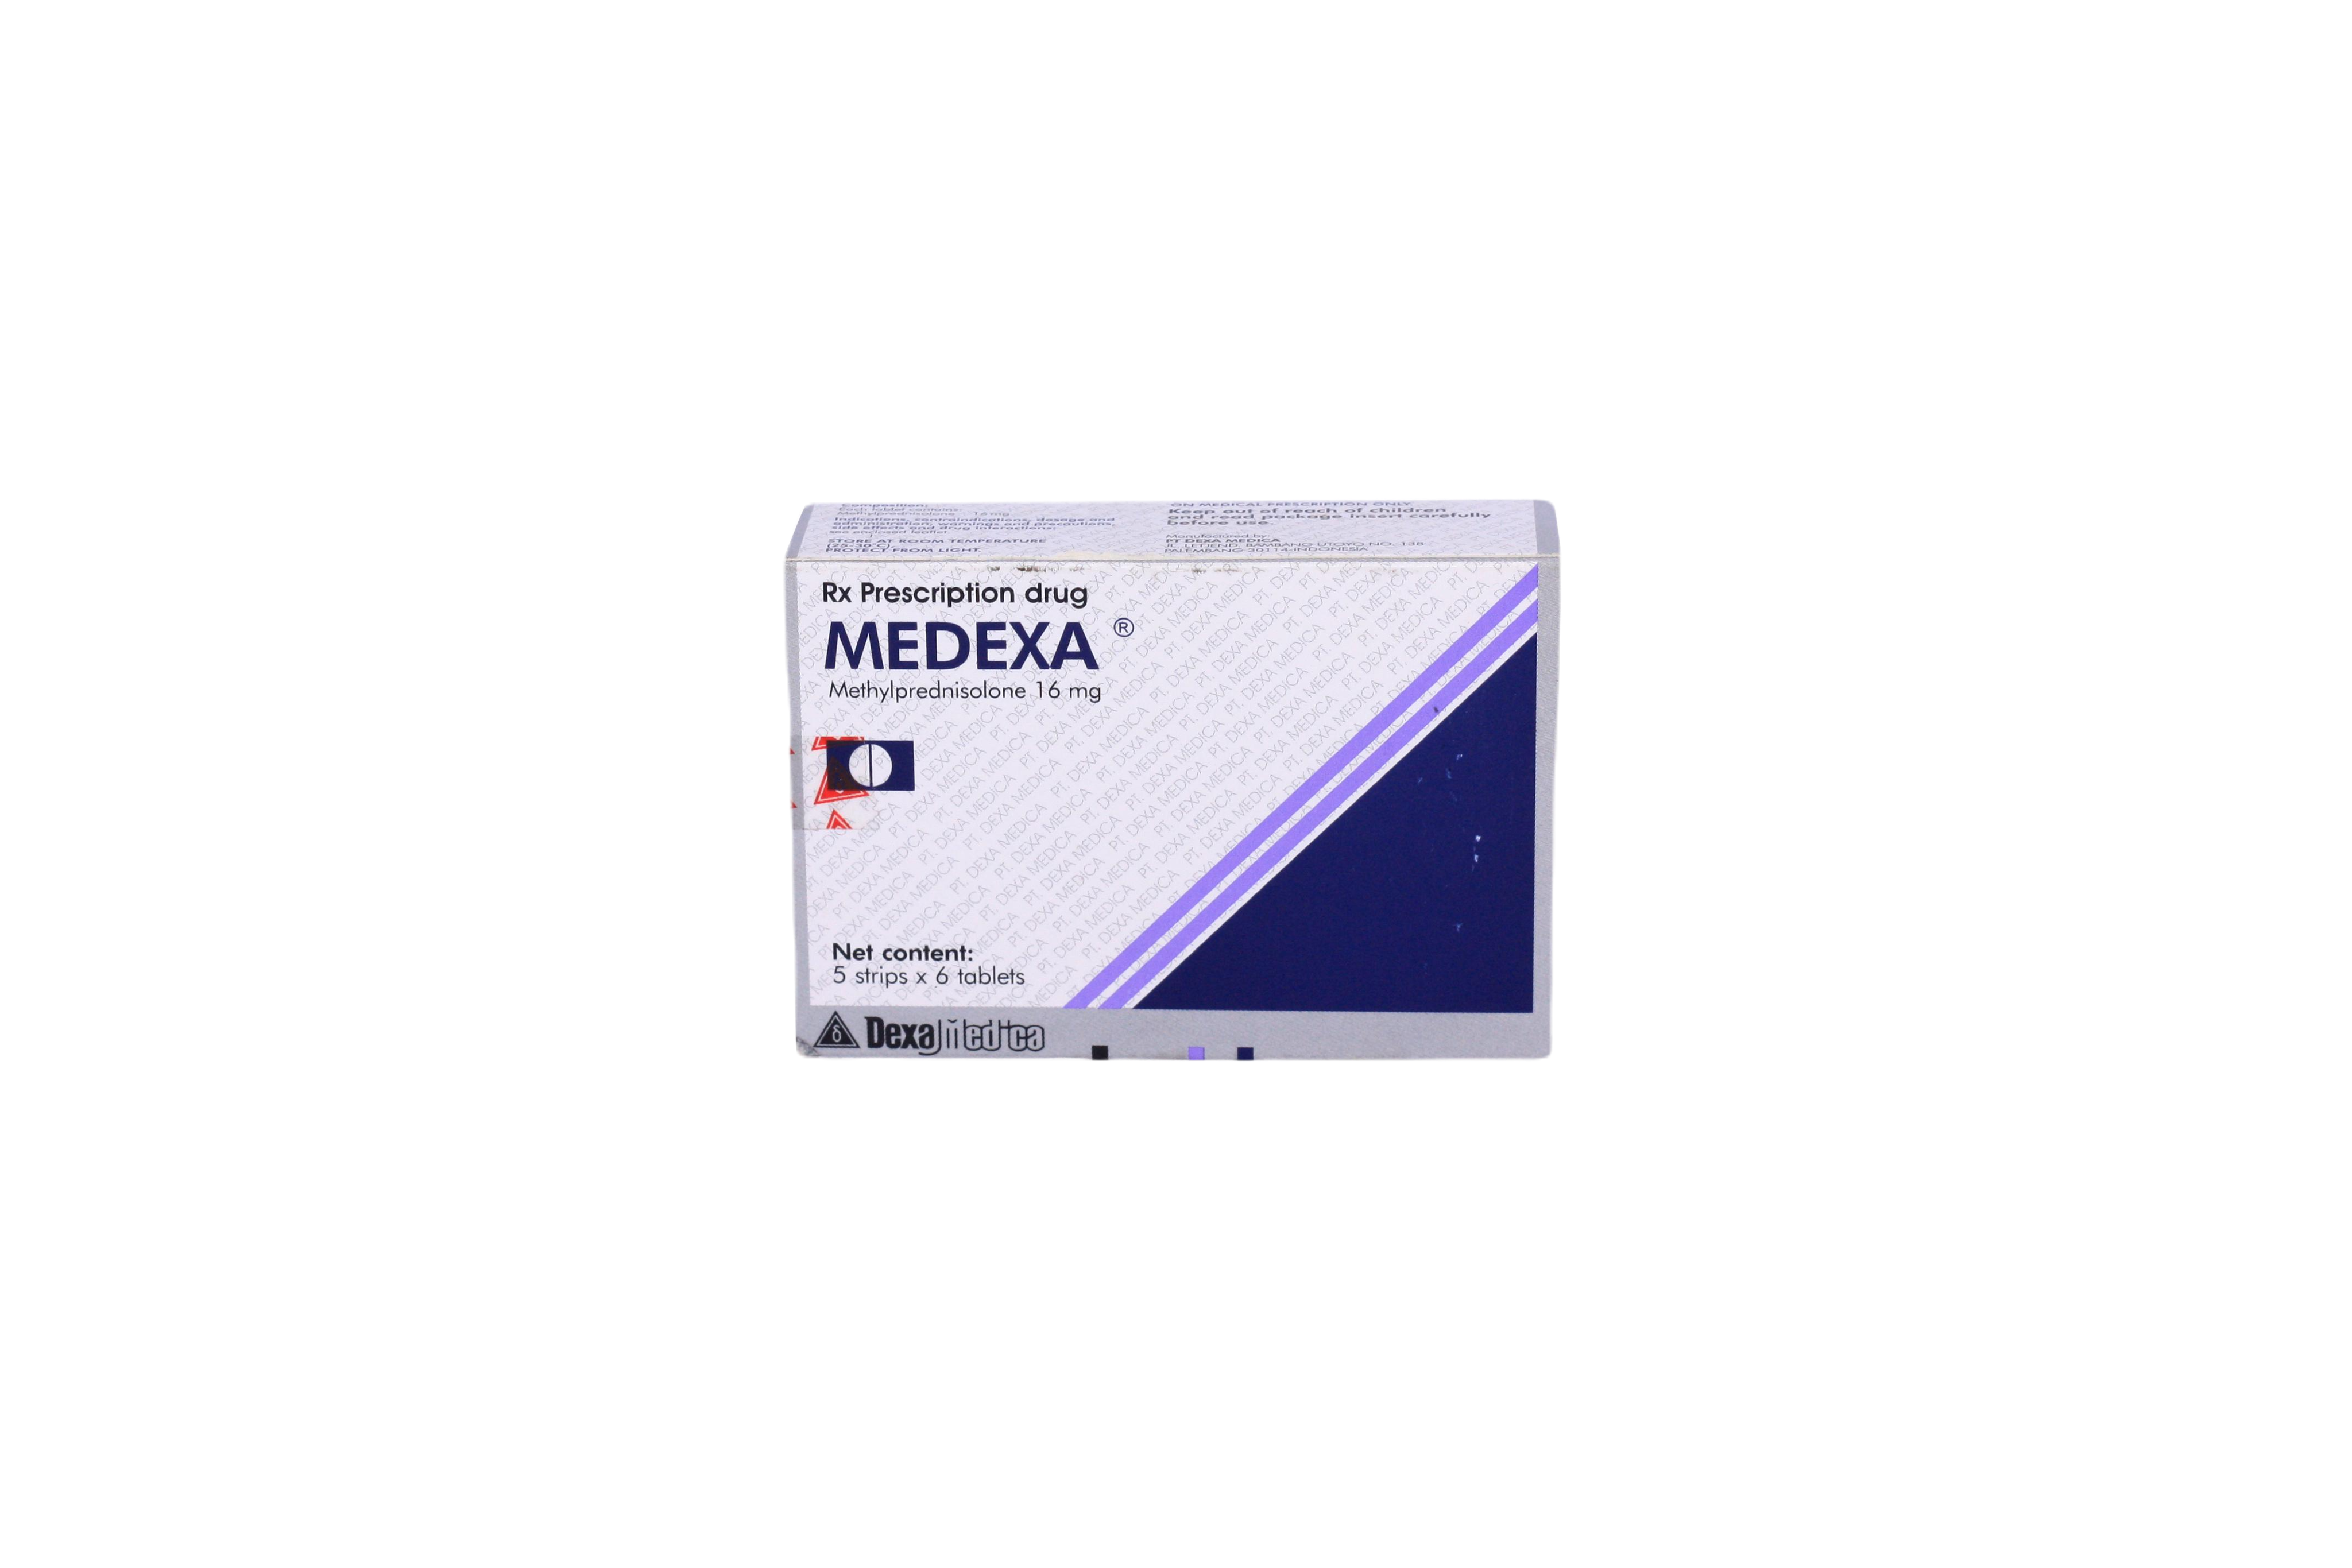 Medexa 16mg (Methylprednisolon) Dexa Medica (H/30v)